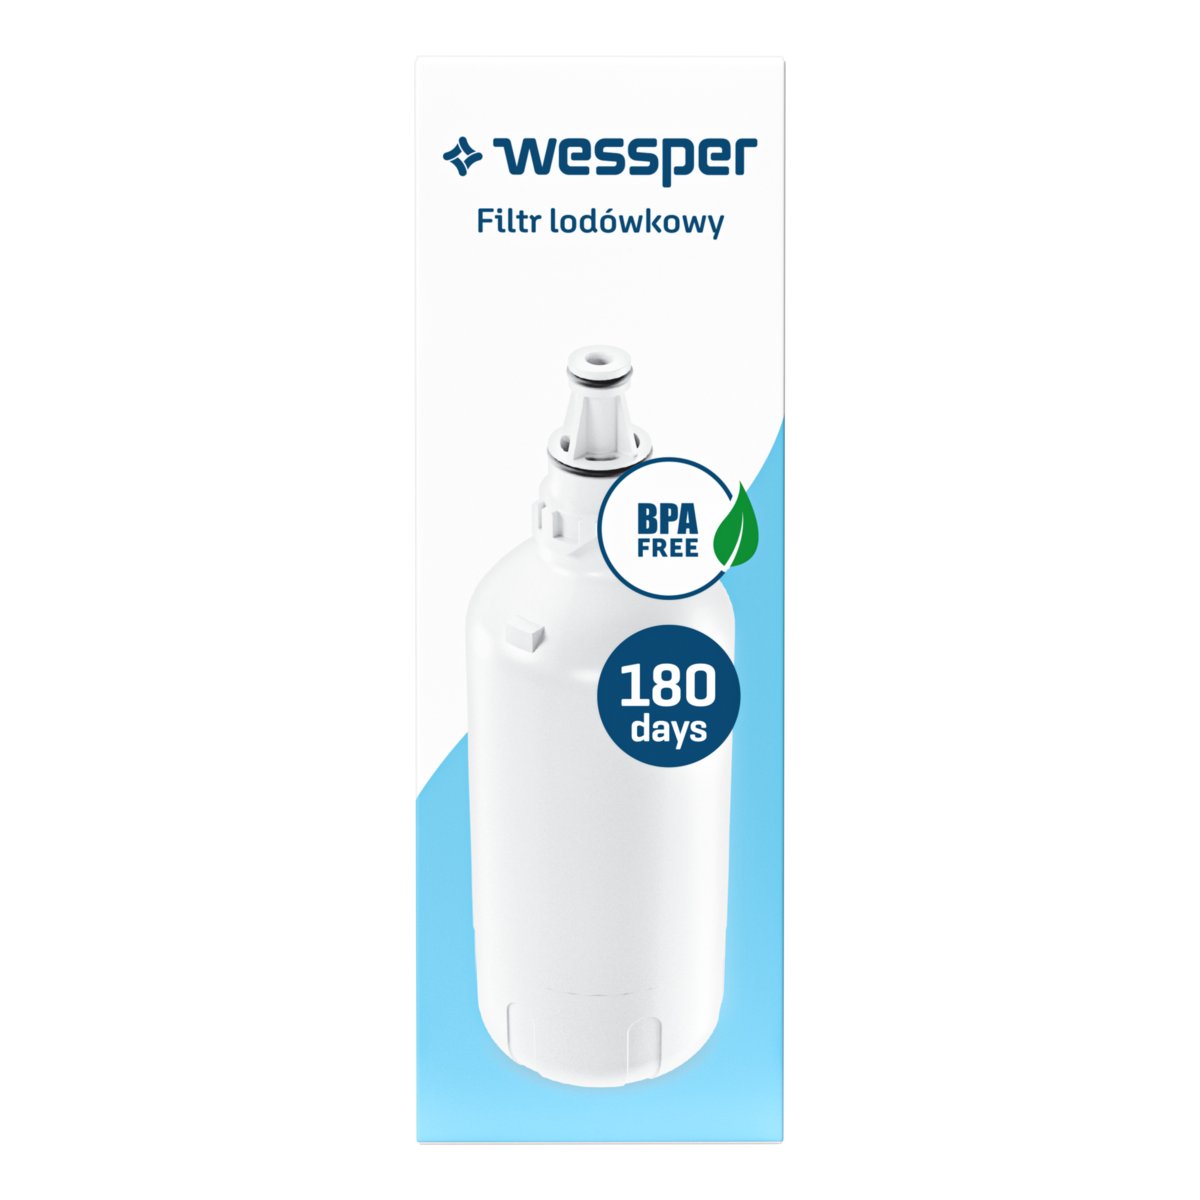 Zdjęcia - Wkład do filtra wody Wessper Filtr  do lodówki Liebherr zamiennik filtrów 7440002 7440000 